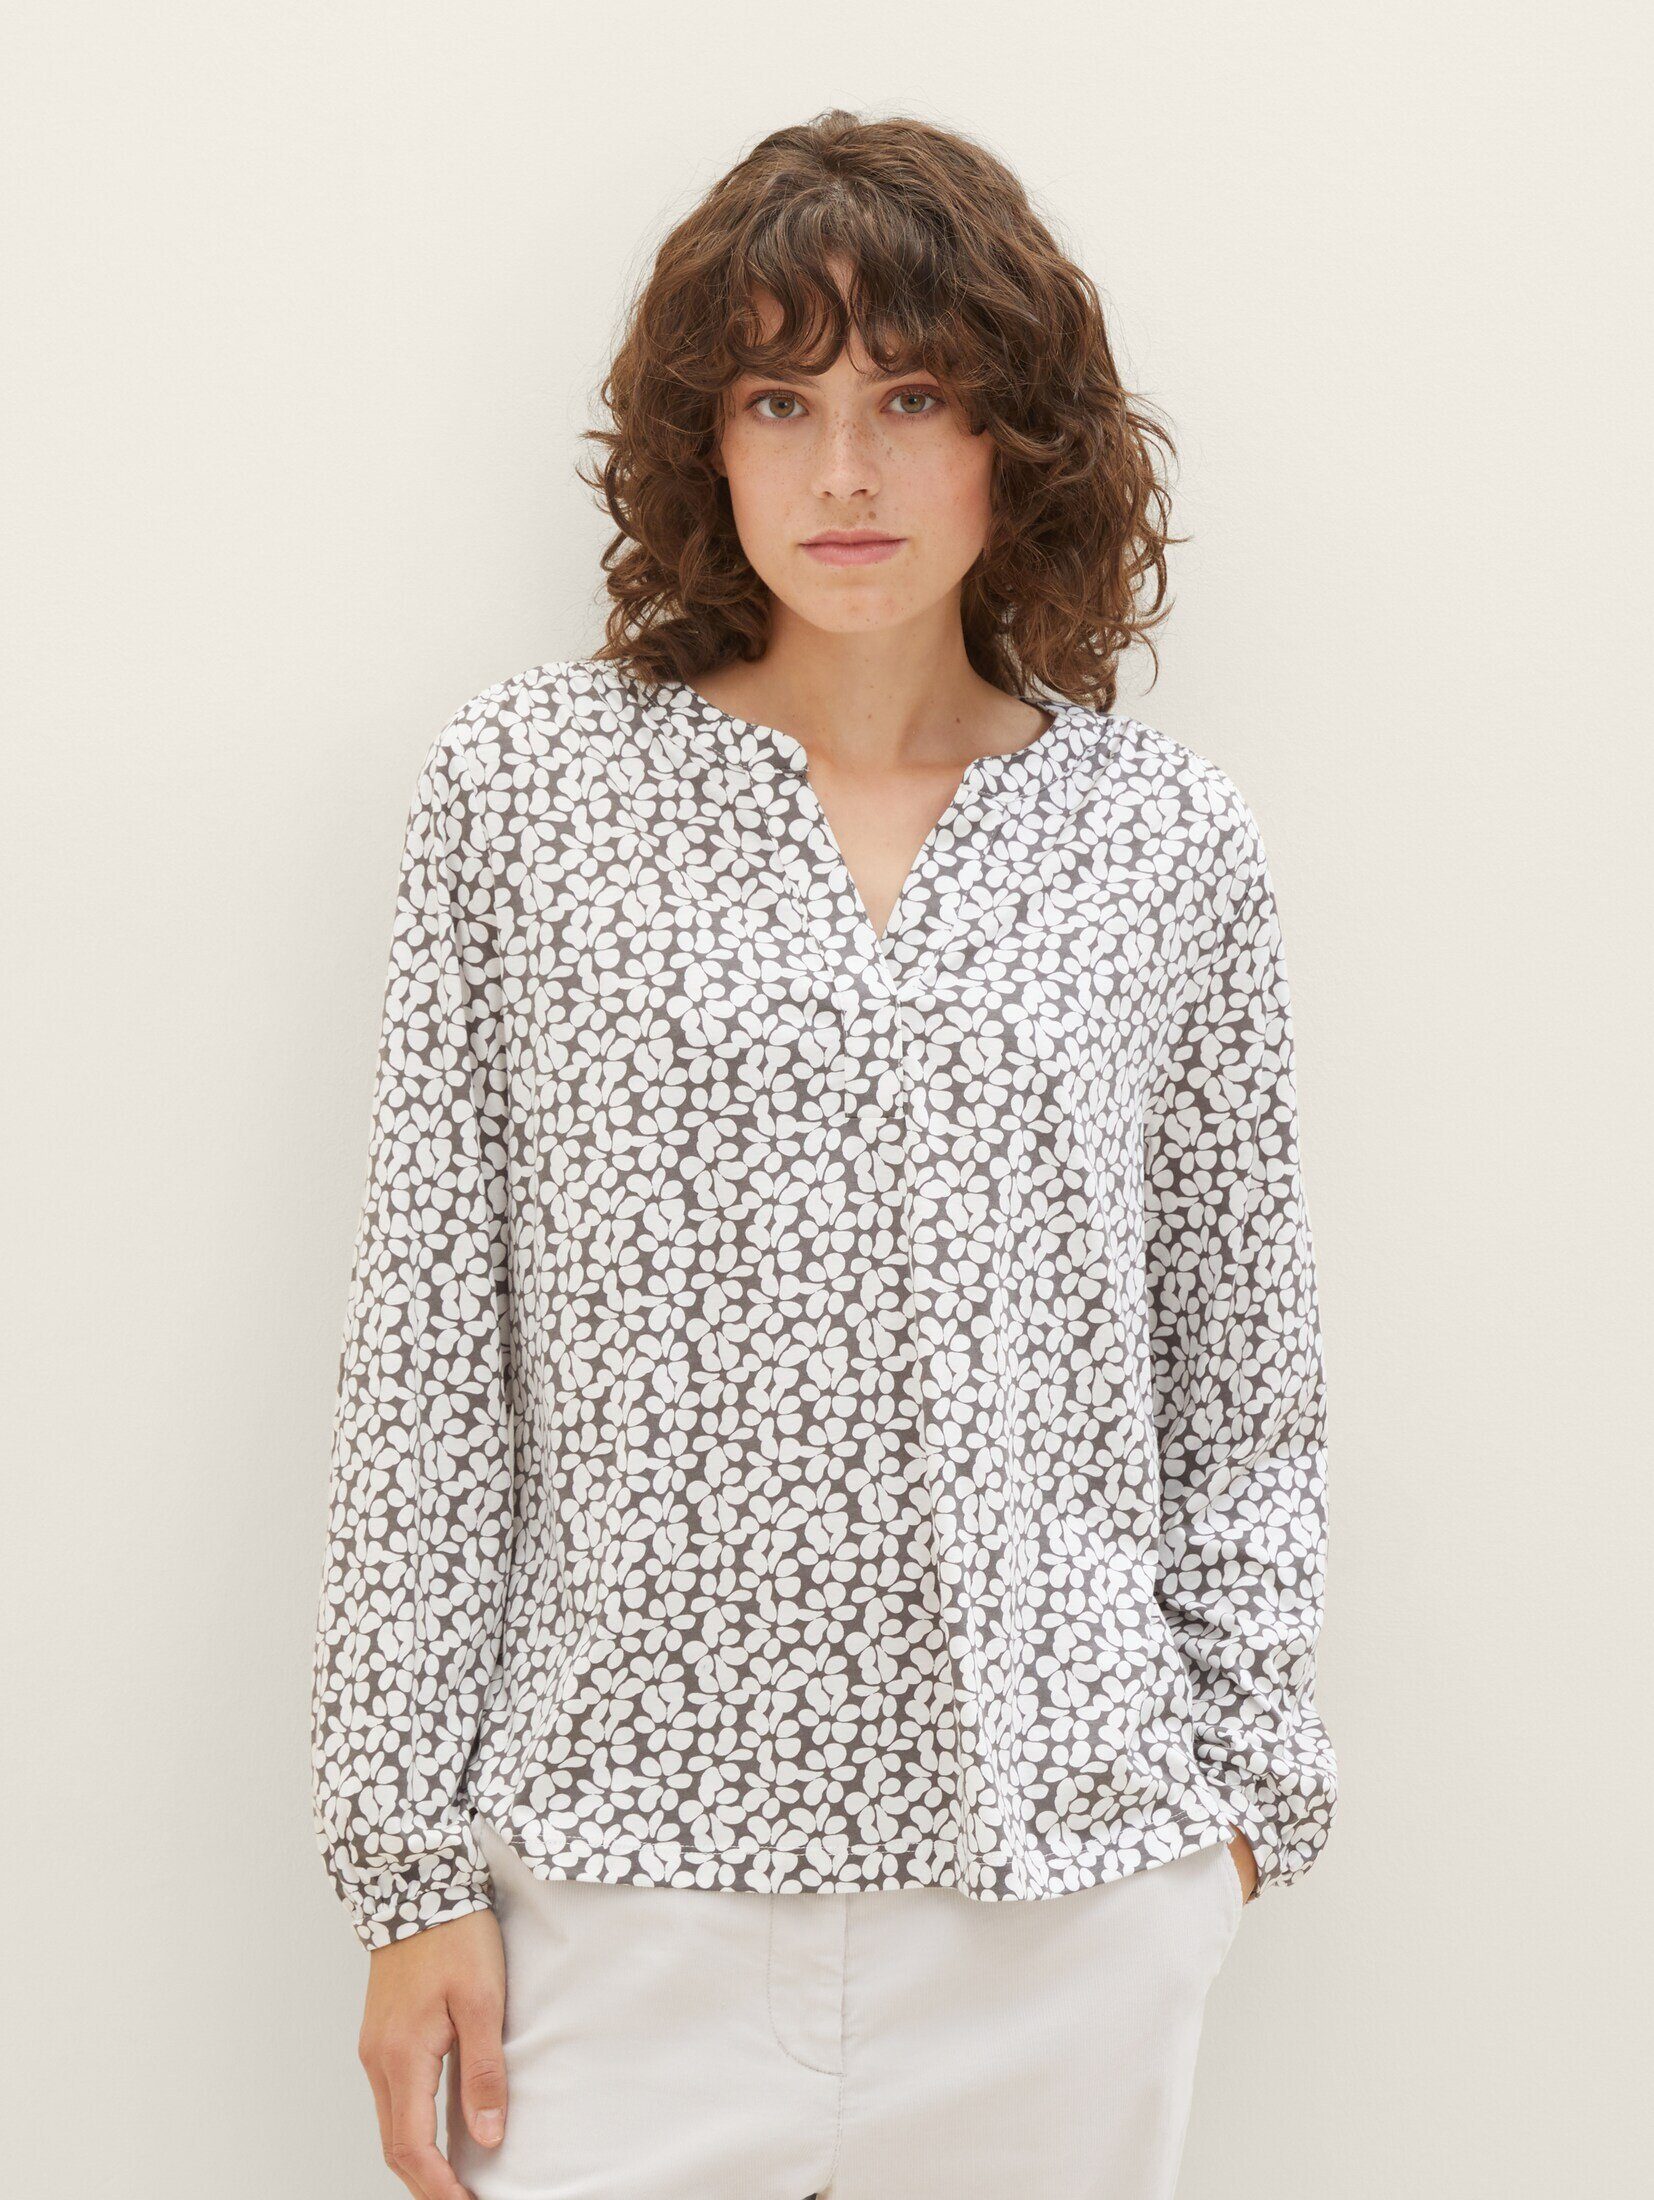 TOM TAILOR T-Shirt Bluse mit Allover-Print grey floral design